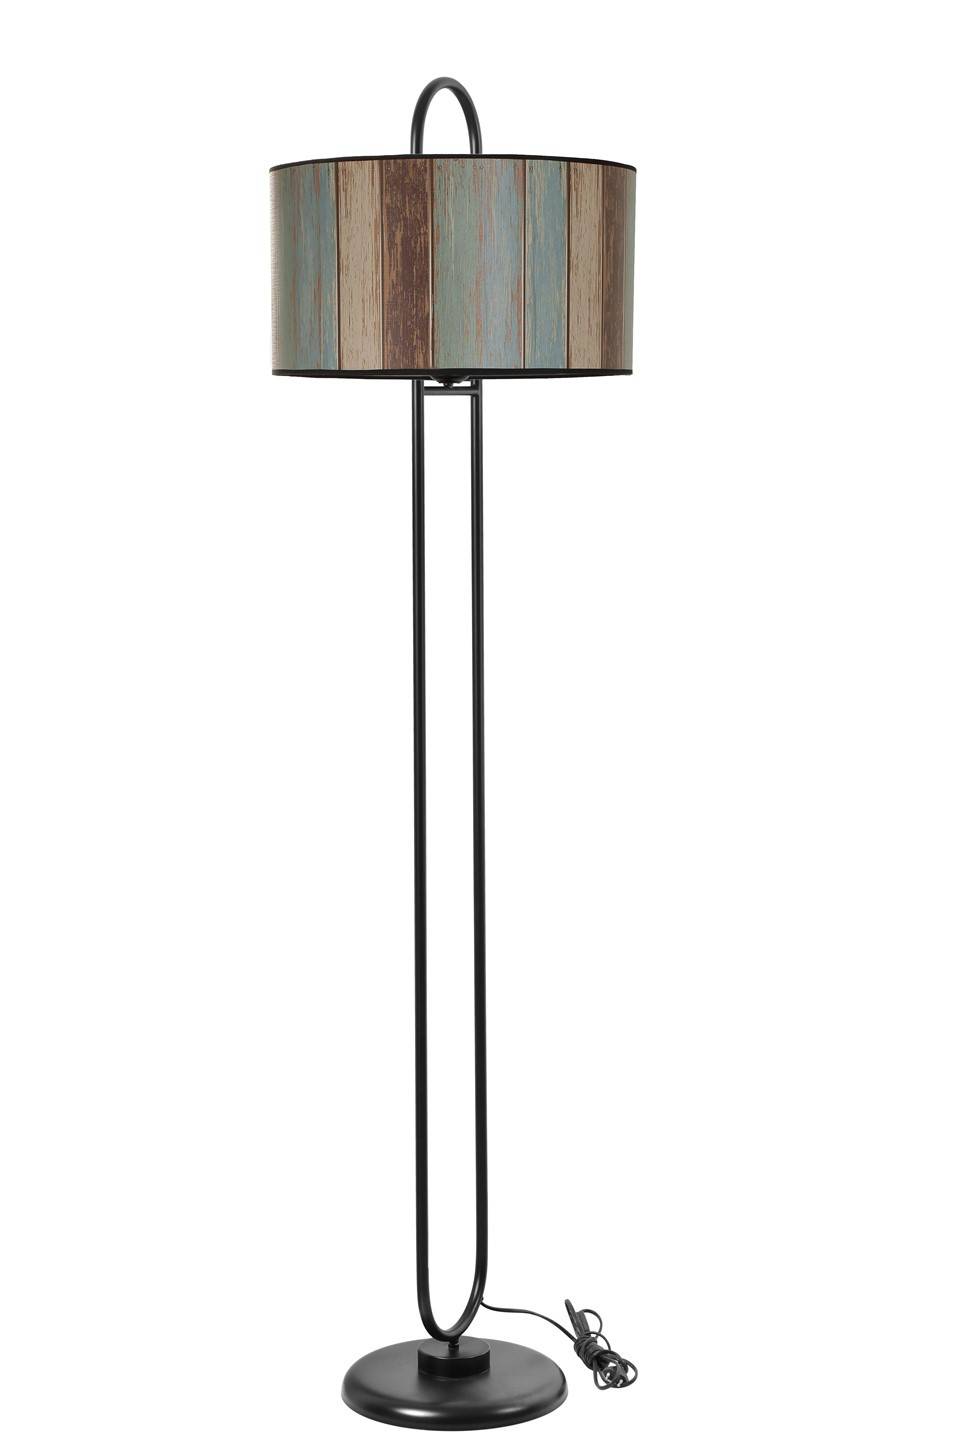 Ovalis elliptische vloerlamp 170cm Multicolor lambrisering en zwart metaal